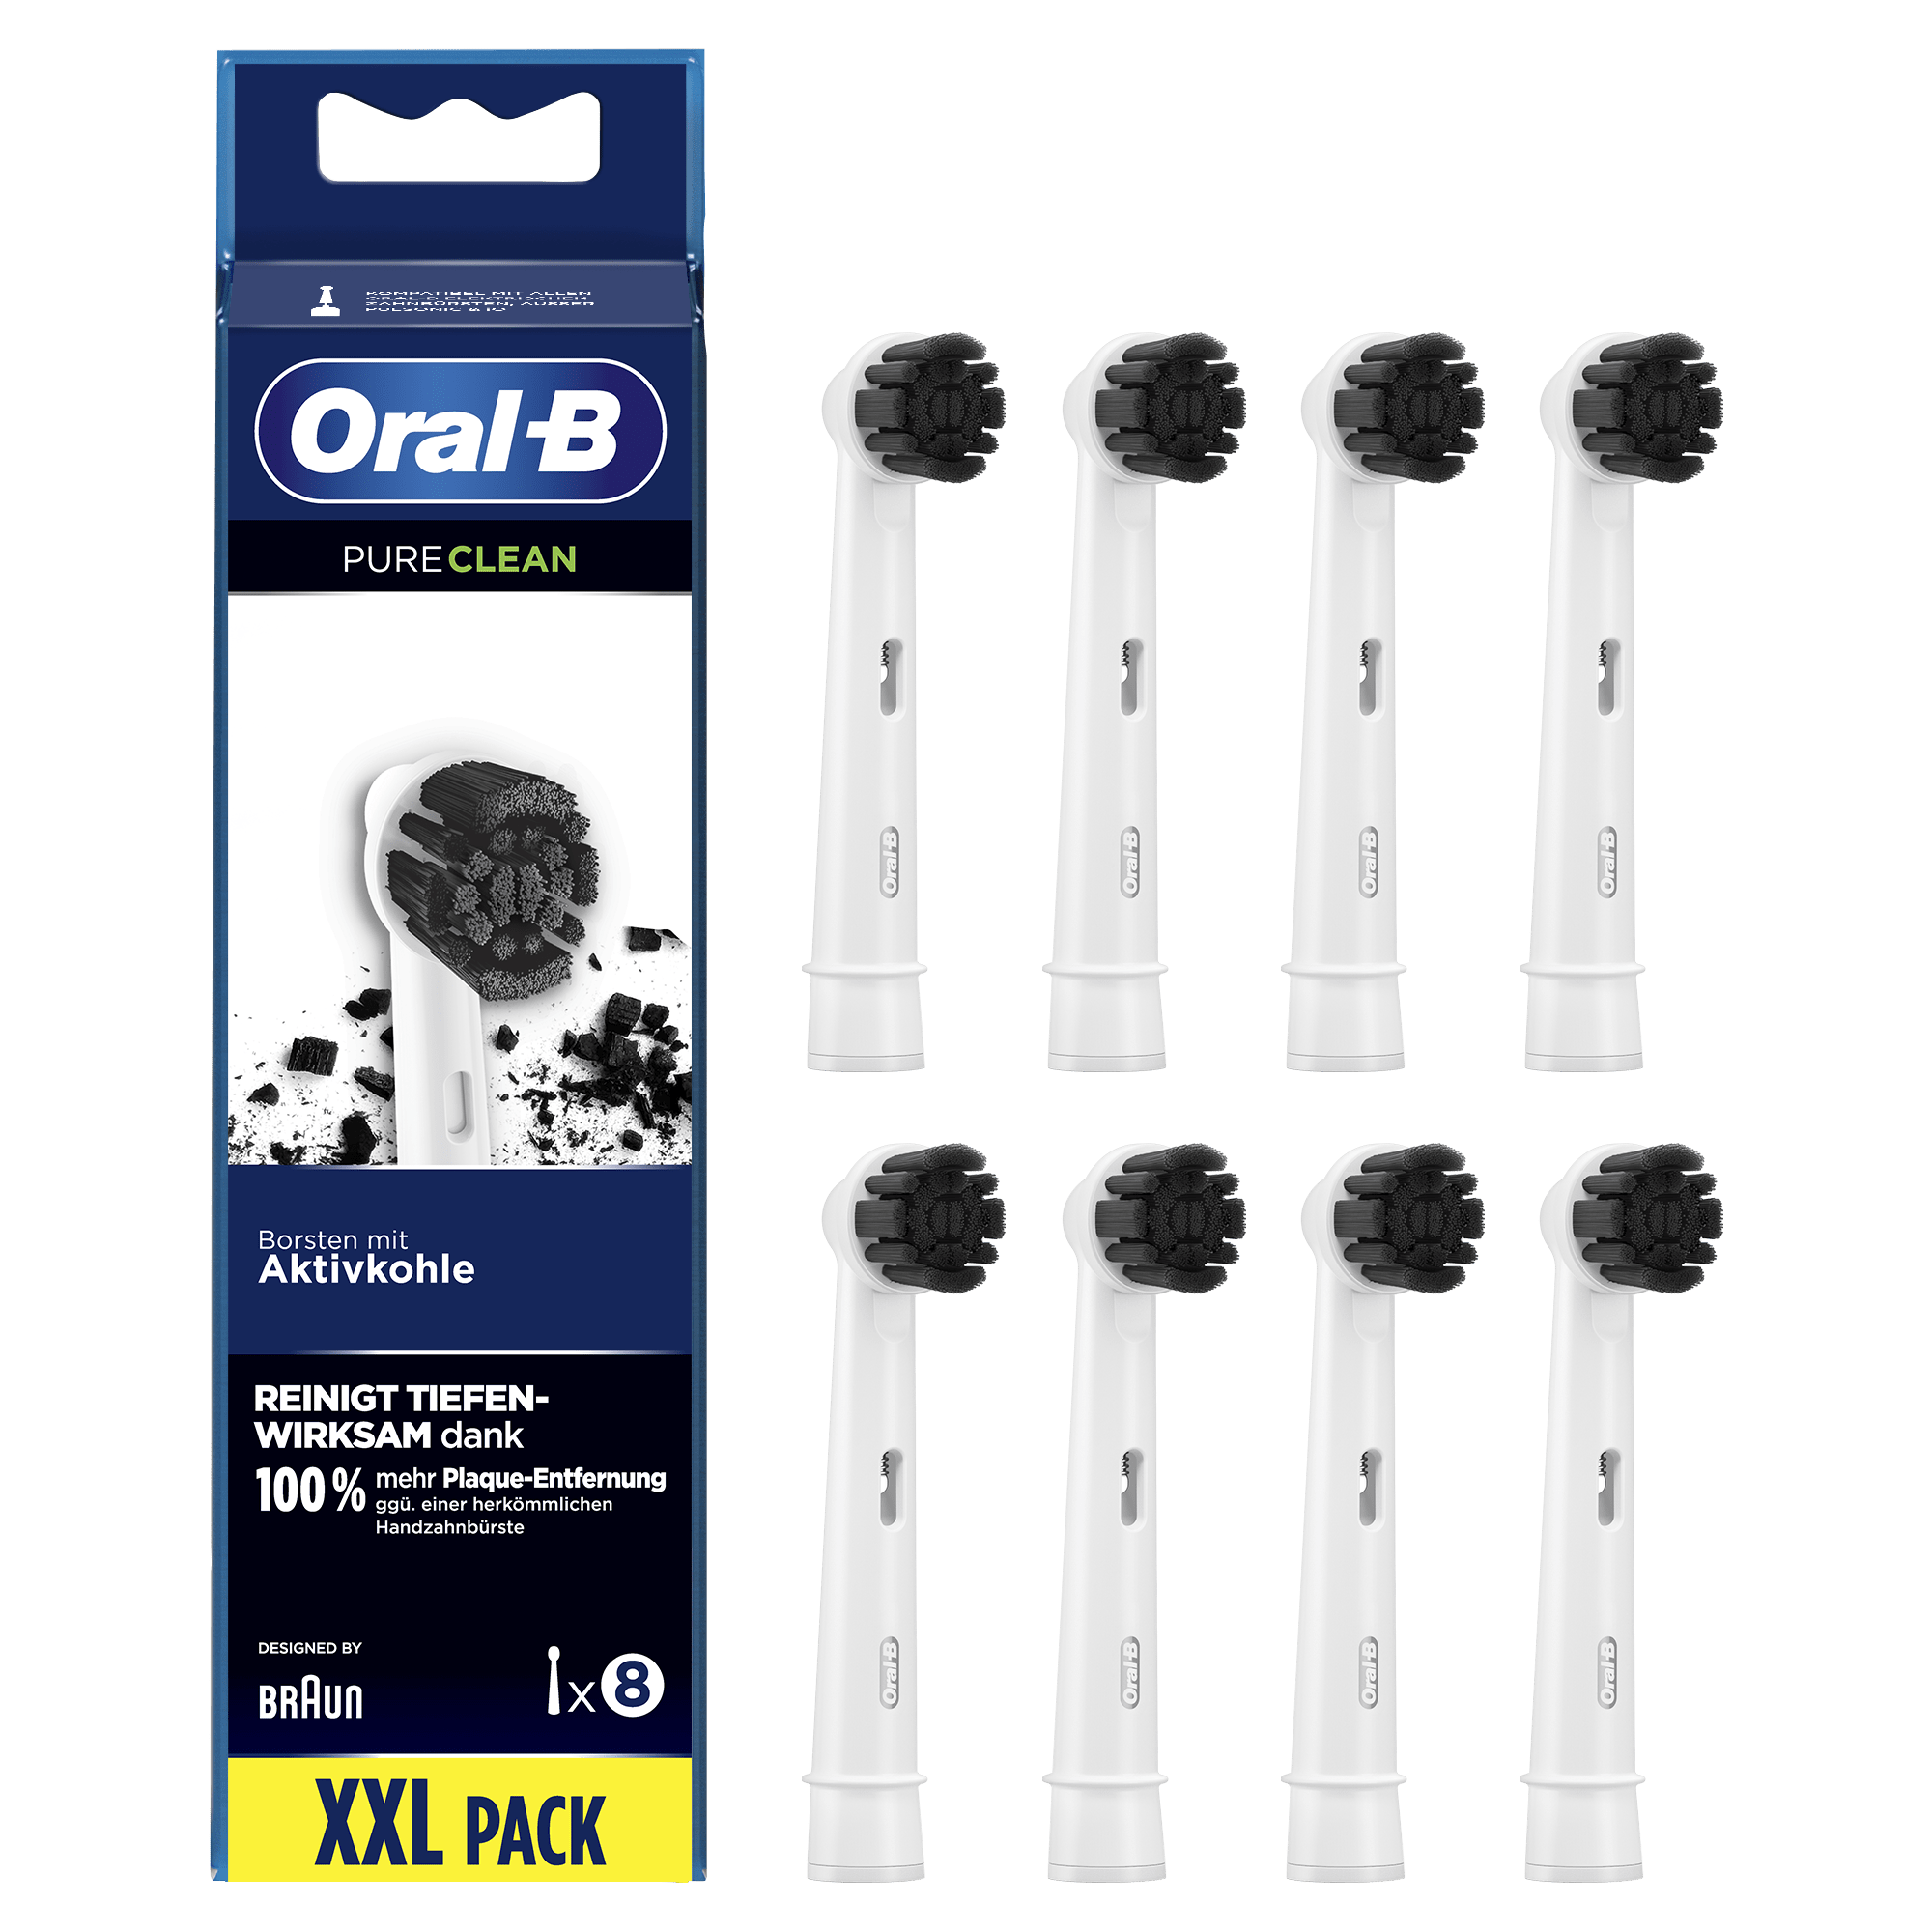 Oral-B PureClean Oral-B Pure Clean Opzetborstel, Verpakking Van 8 Stuks